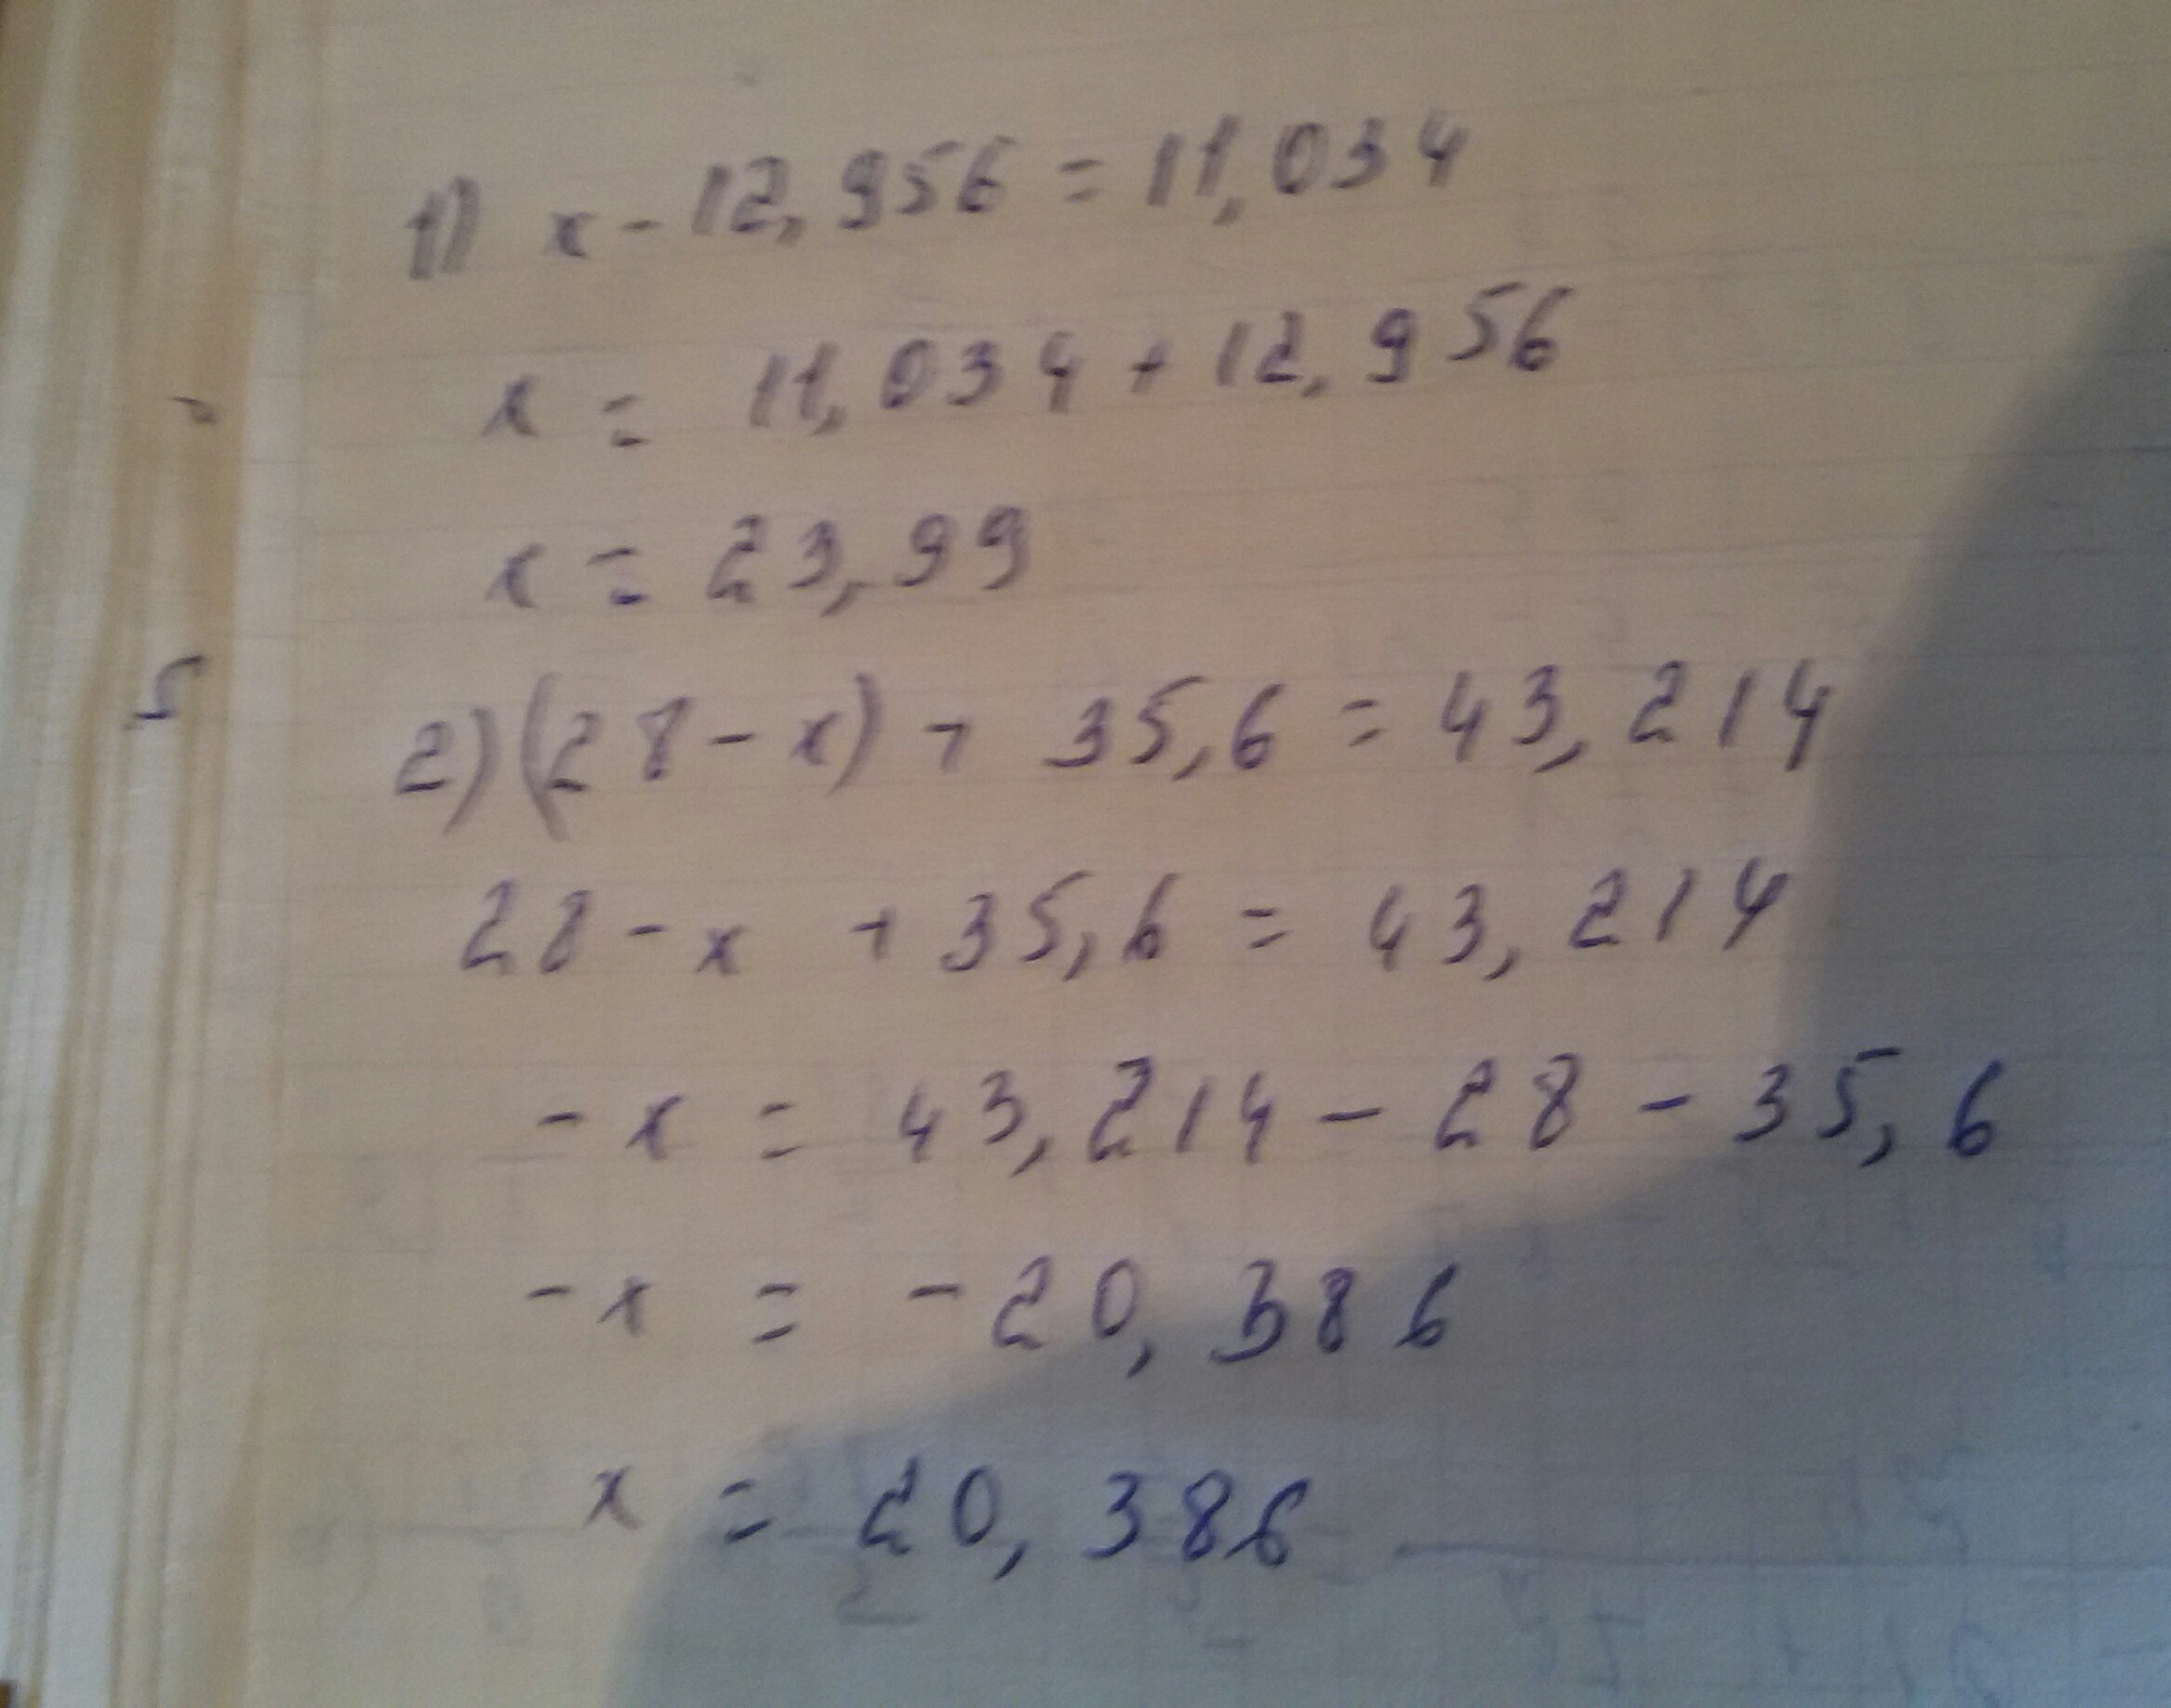 3х равно 28 х. (28-Х)+35,6=43,214. (28-Х)+35,6=43,214 решение уравнений. Решение уравнения 28+х=28. Х:28=35.